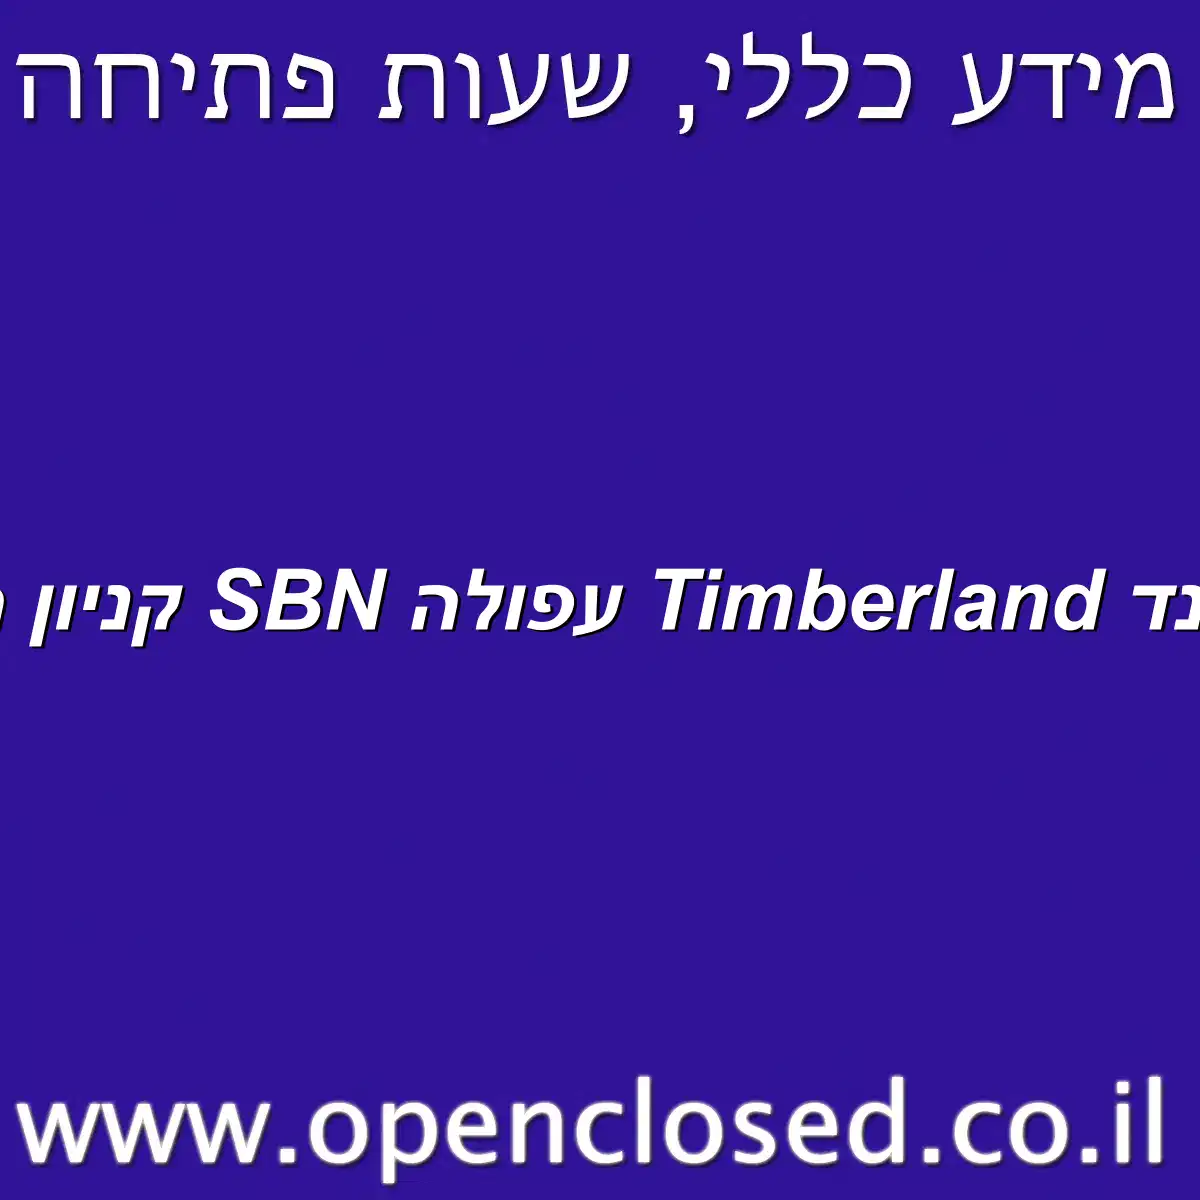 טימברלנד Timberland עפולה SBN קניון העמקים